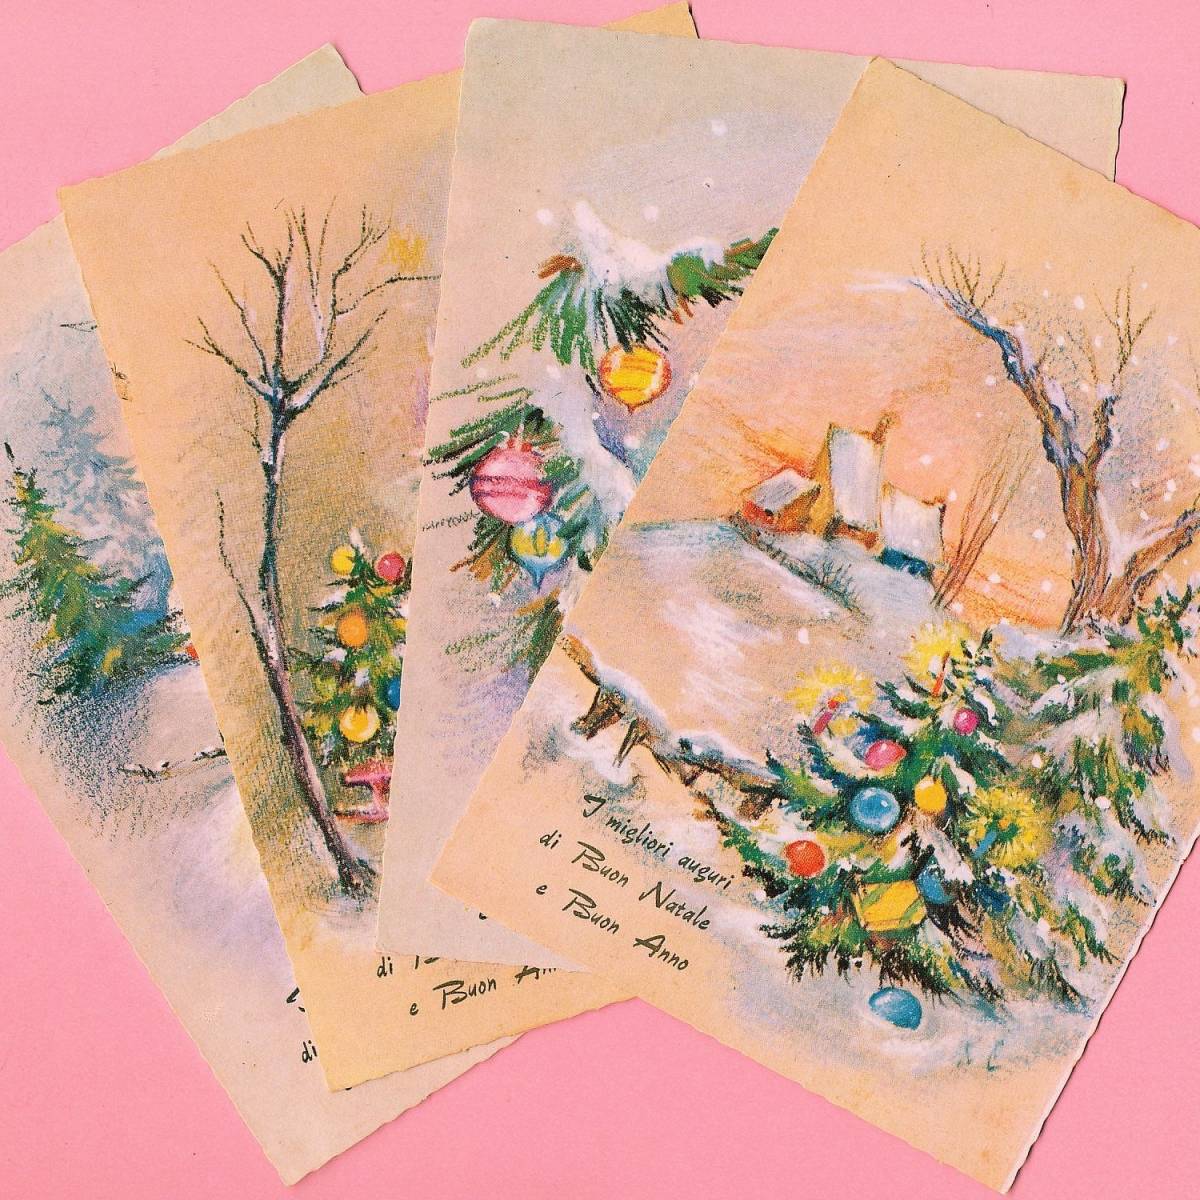 复古明信片 (42) H33 ◆ 4 张装圣诞节新年法国德国比利时意大利英国图片明信片, 古董, 收藏, 杂货, 图片明信片